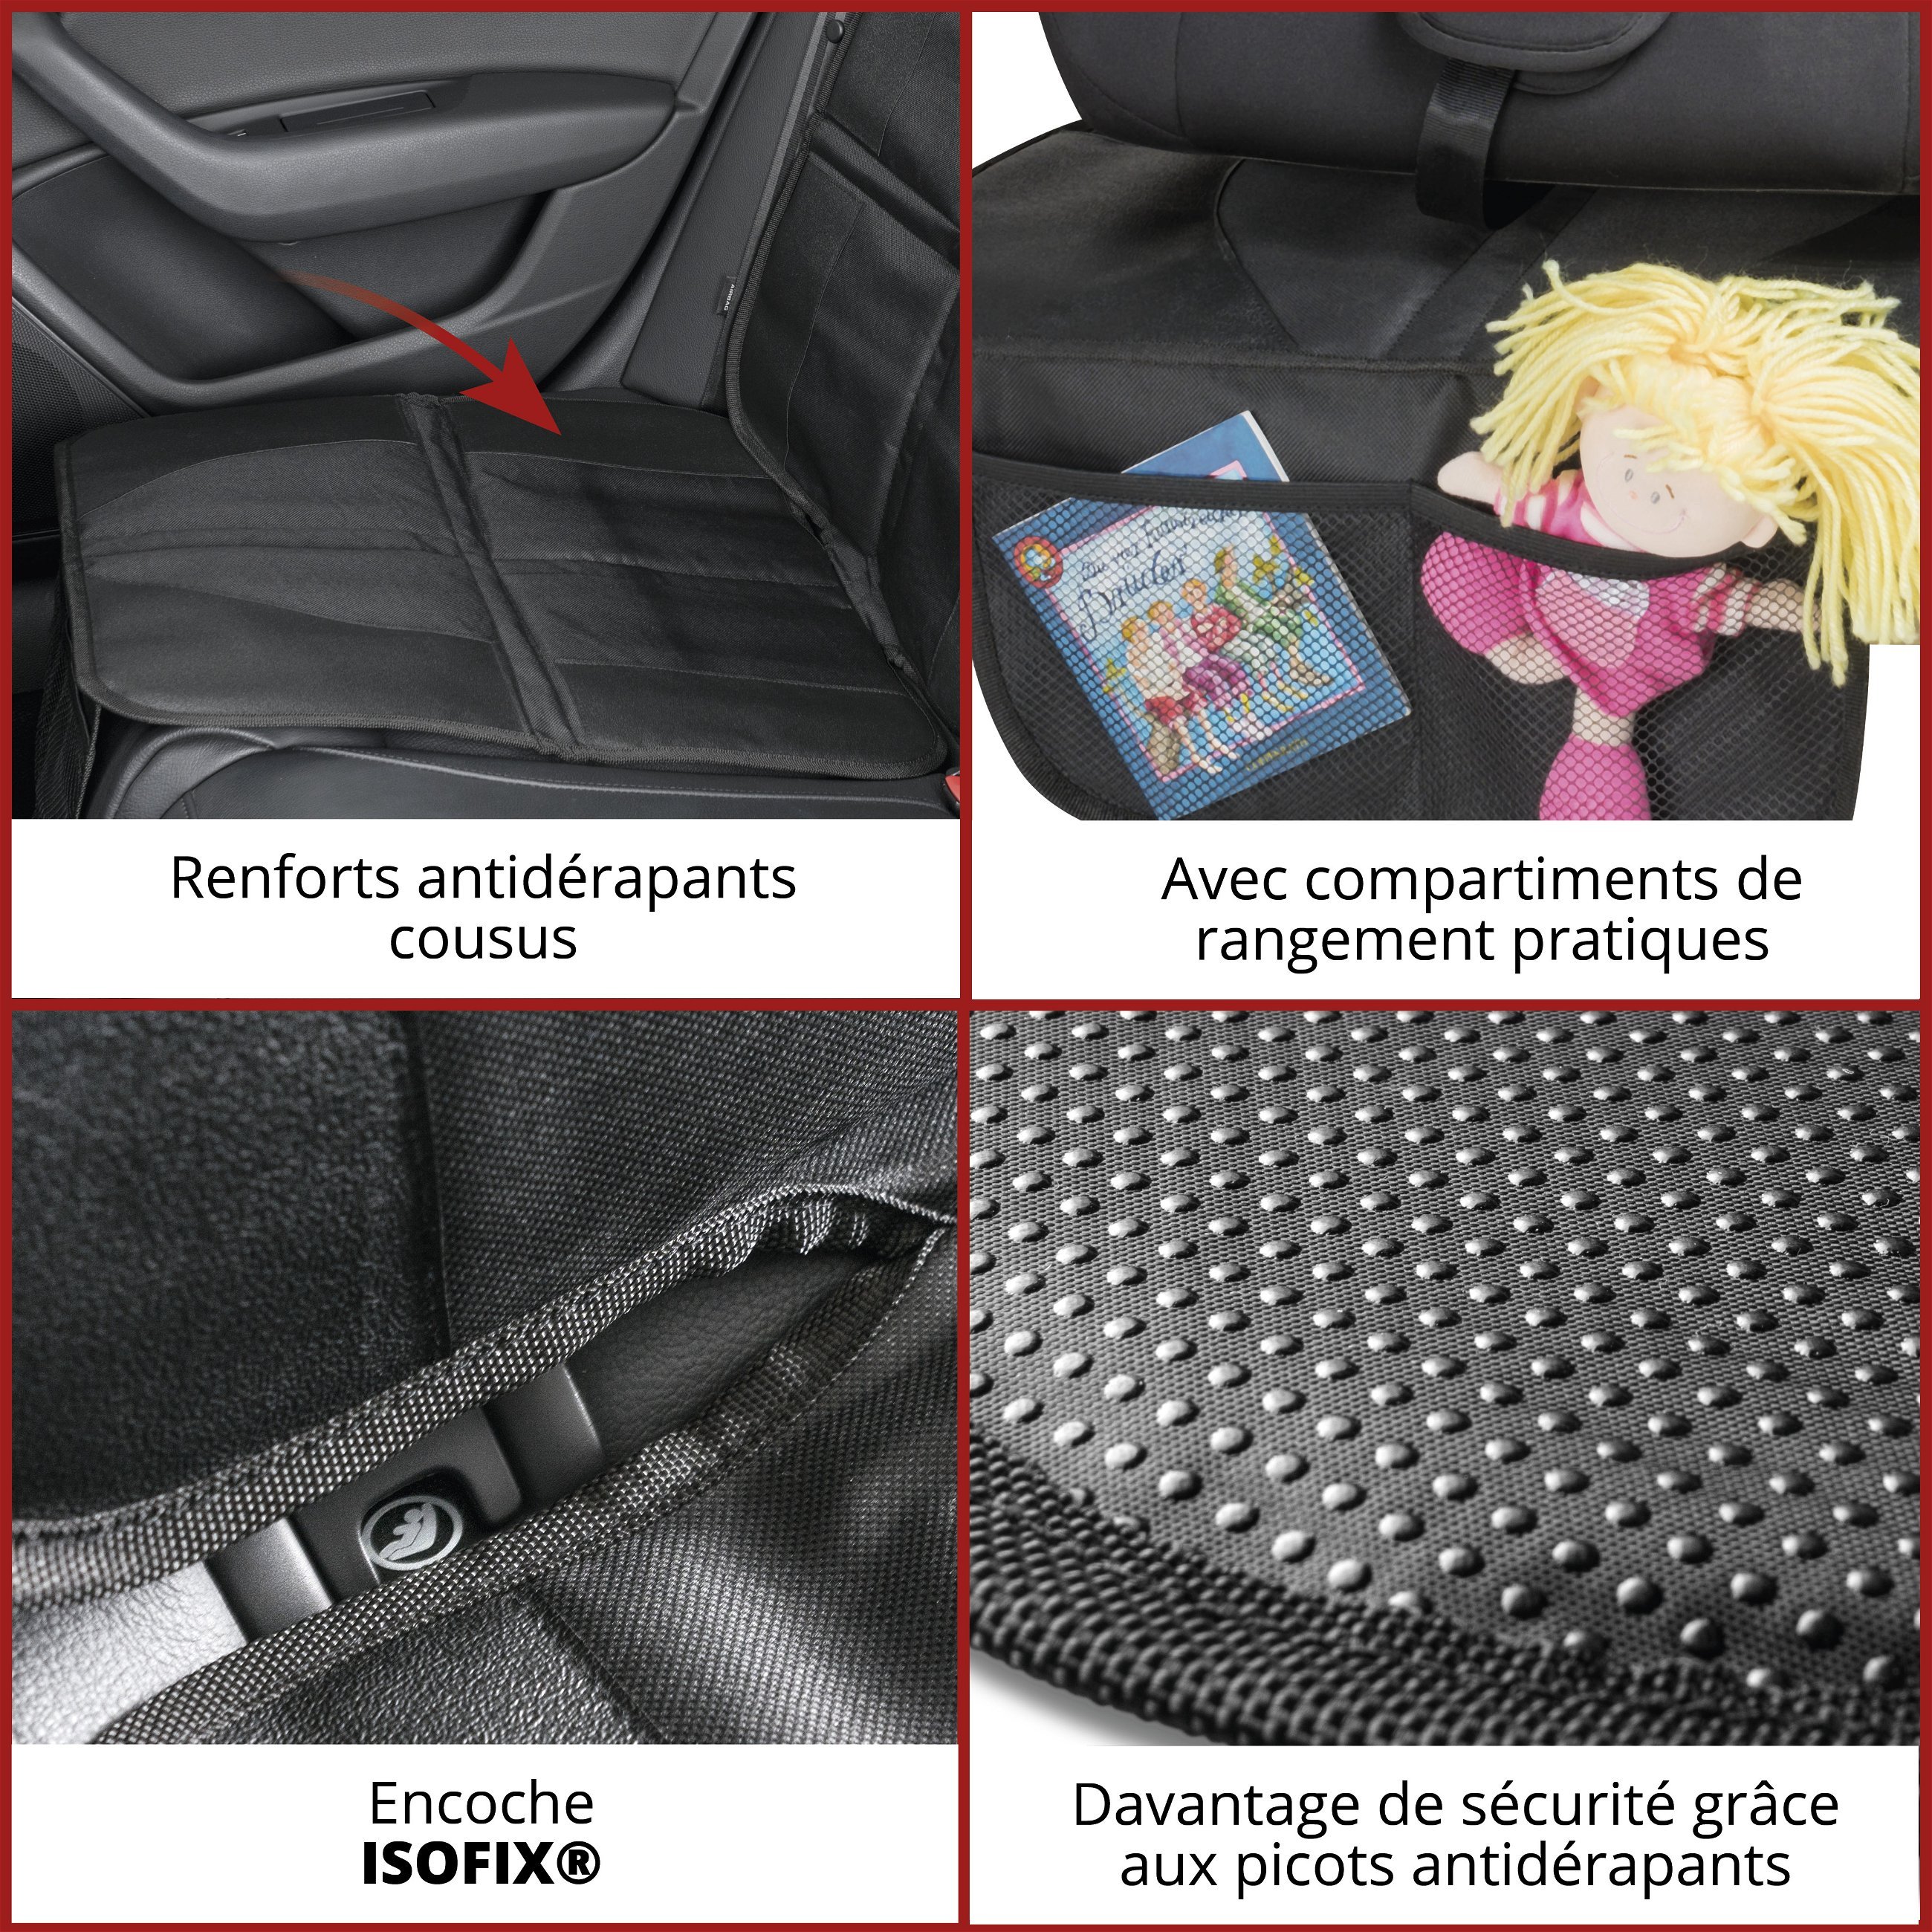 Coussin pour siège enfant George Premium, tapis de protection pour siège enfant noir